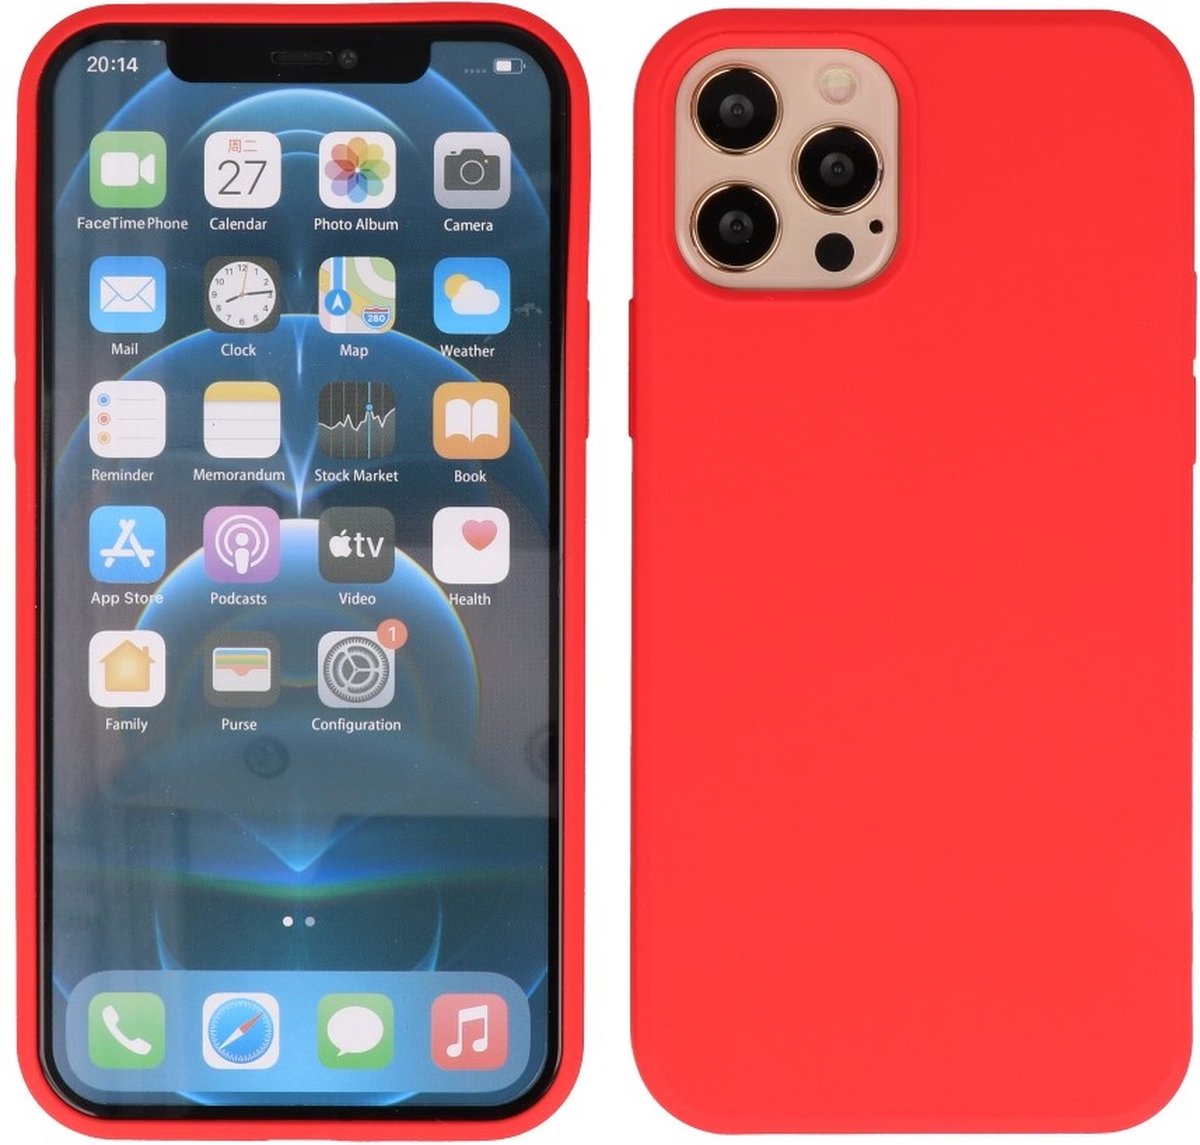 Hoesje 2.0mm Dikke Siliconen Back Cover Kleur Rood geschikt voor Iphone 12 Pro Max